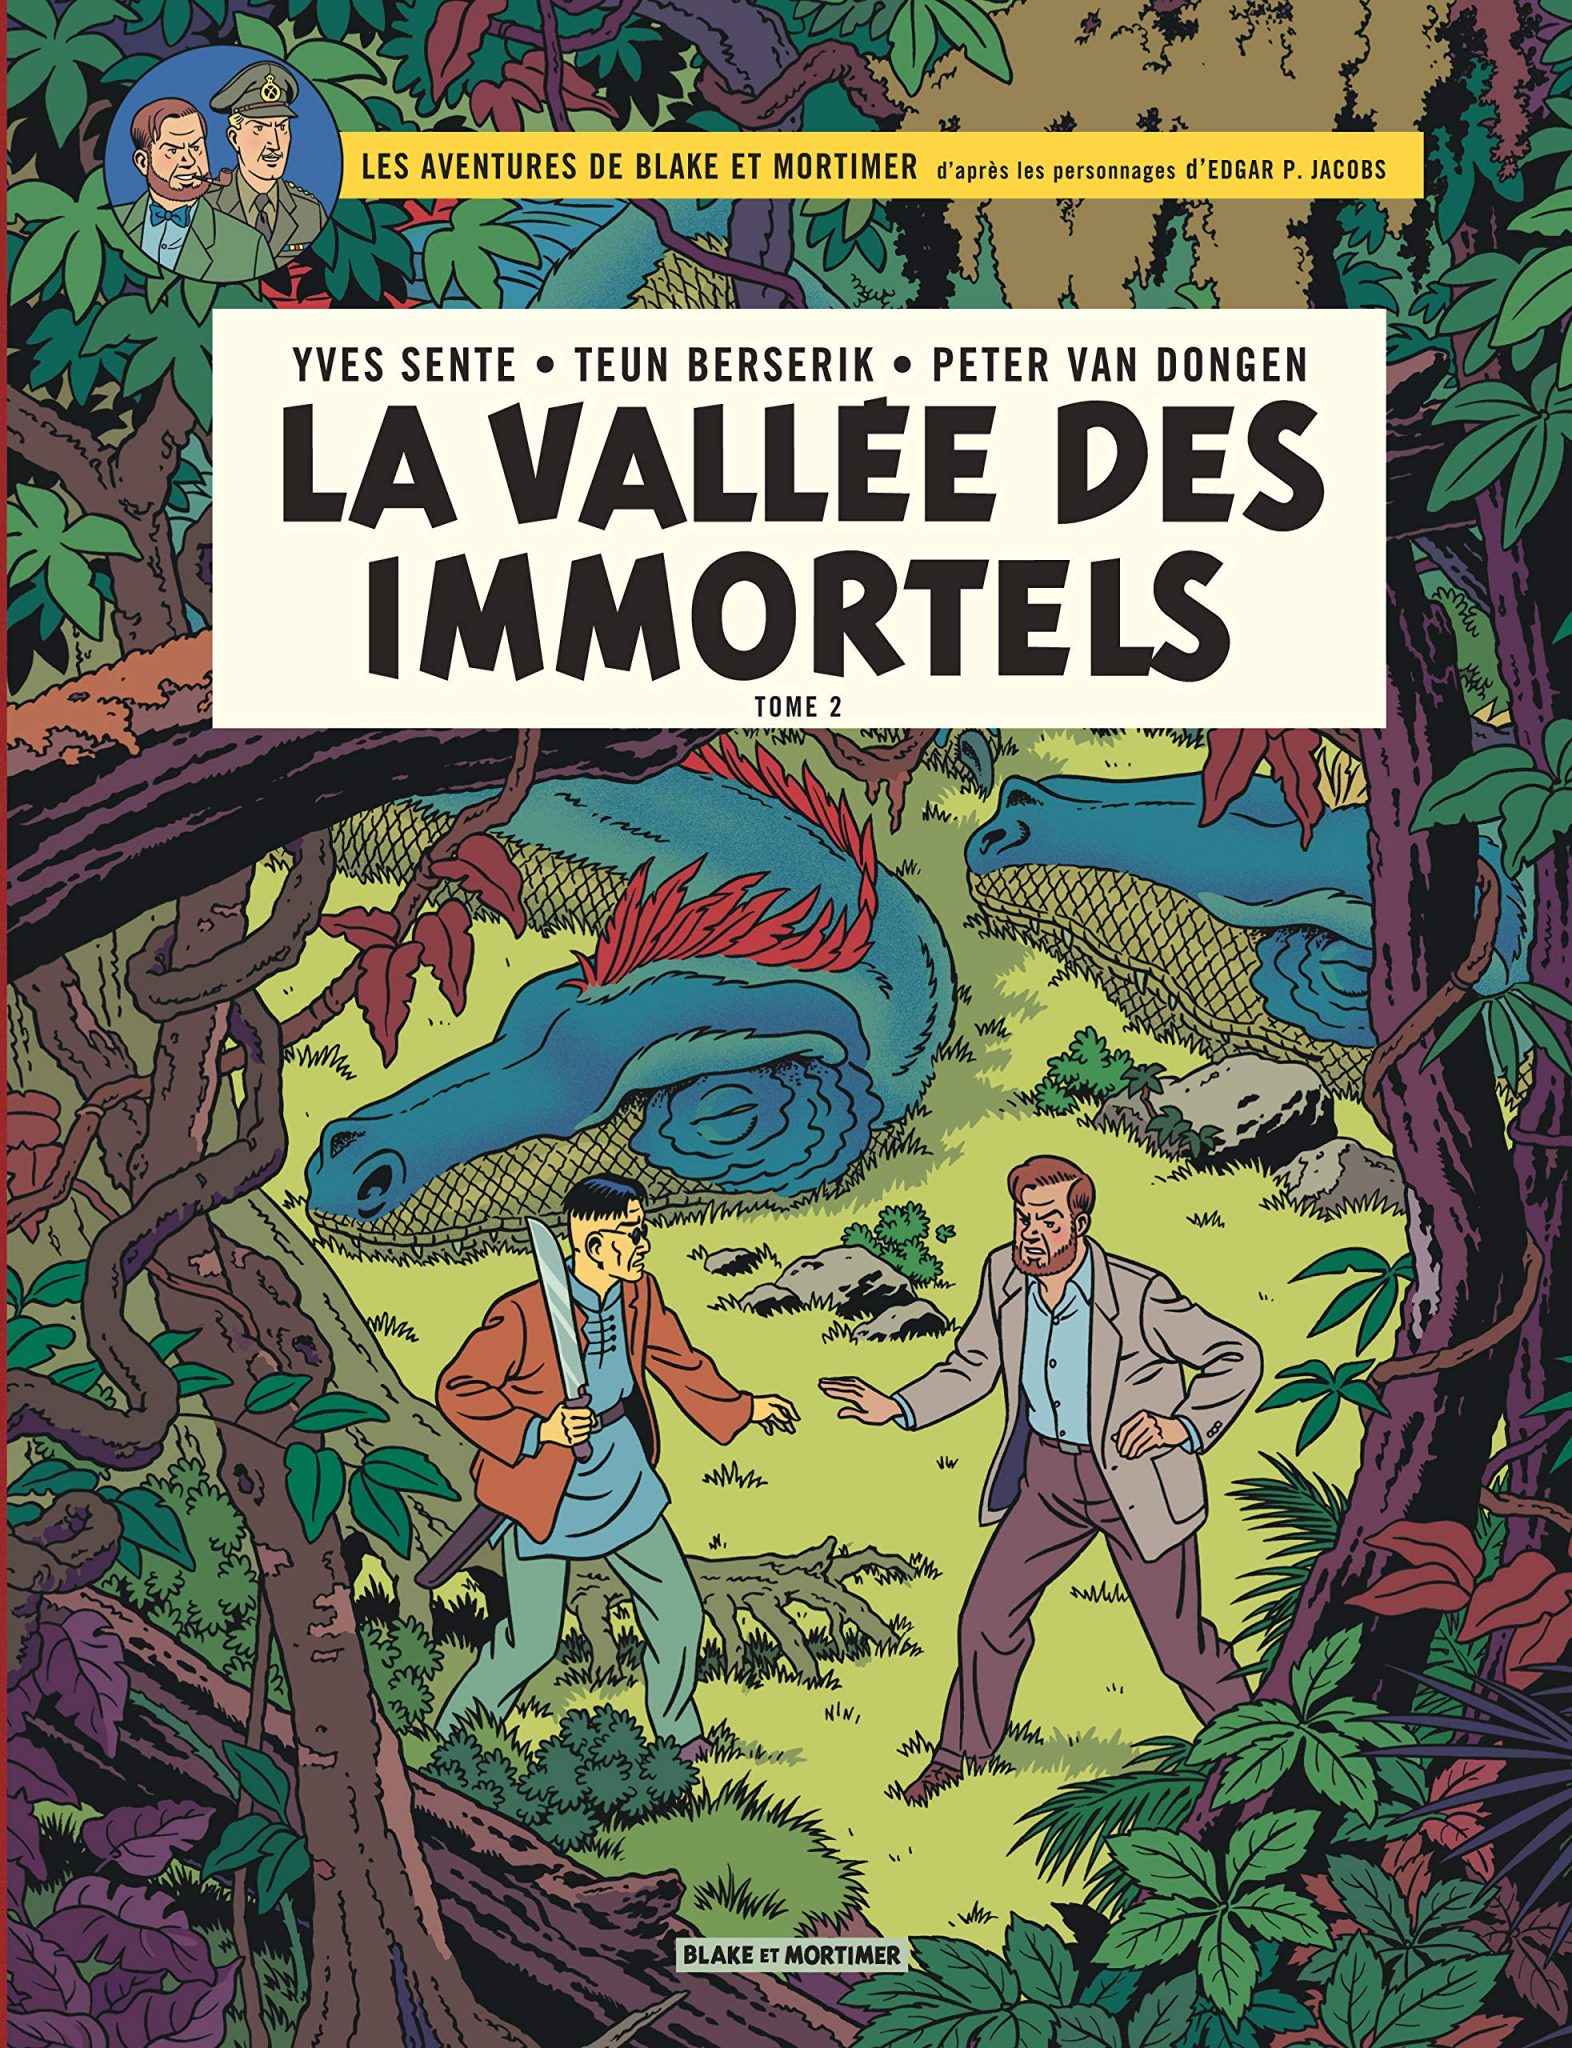 Blake et Mortimer: La Vallée des Immortels, tome 2